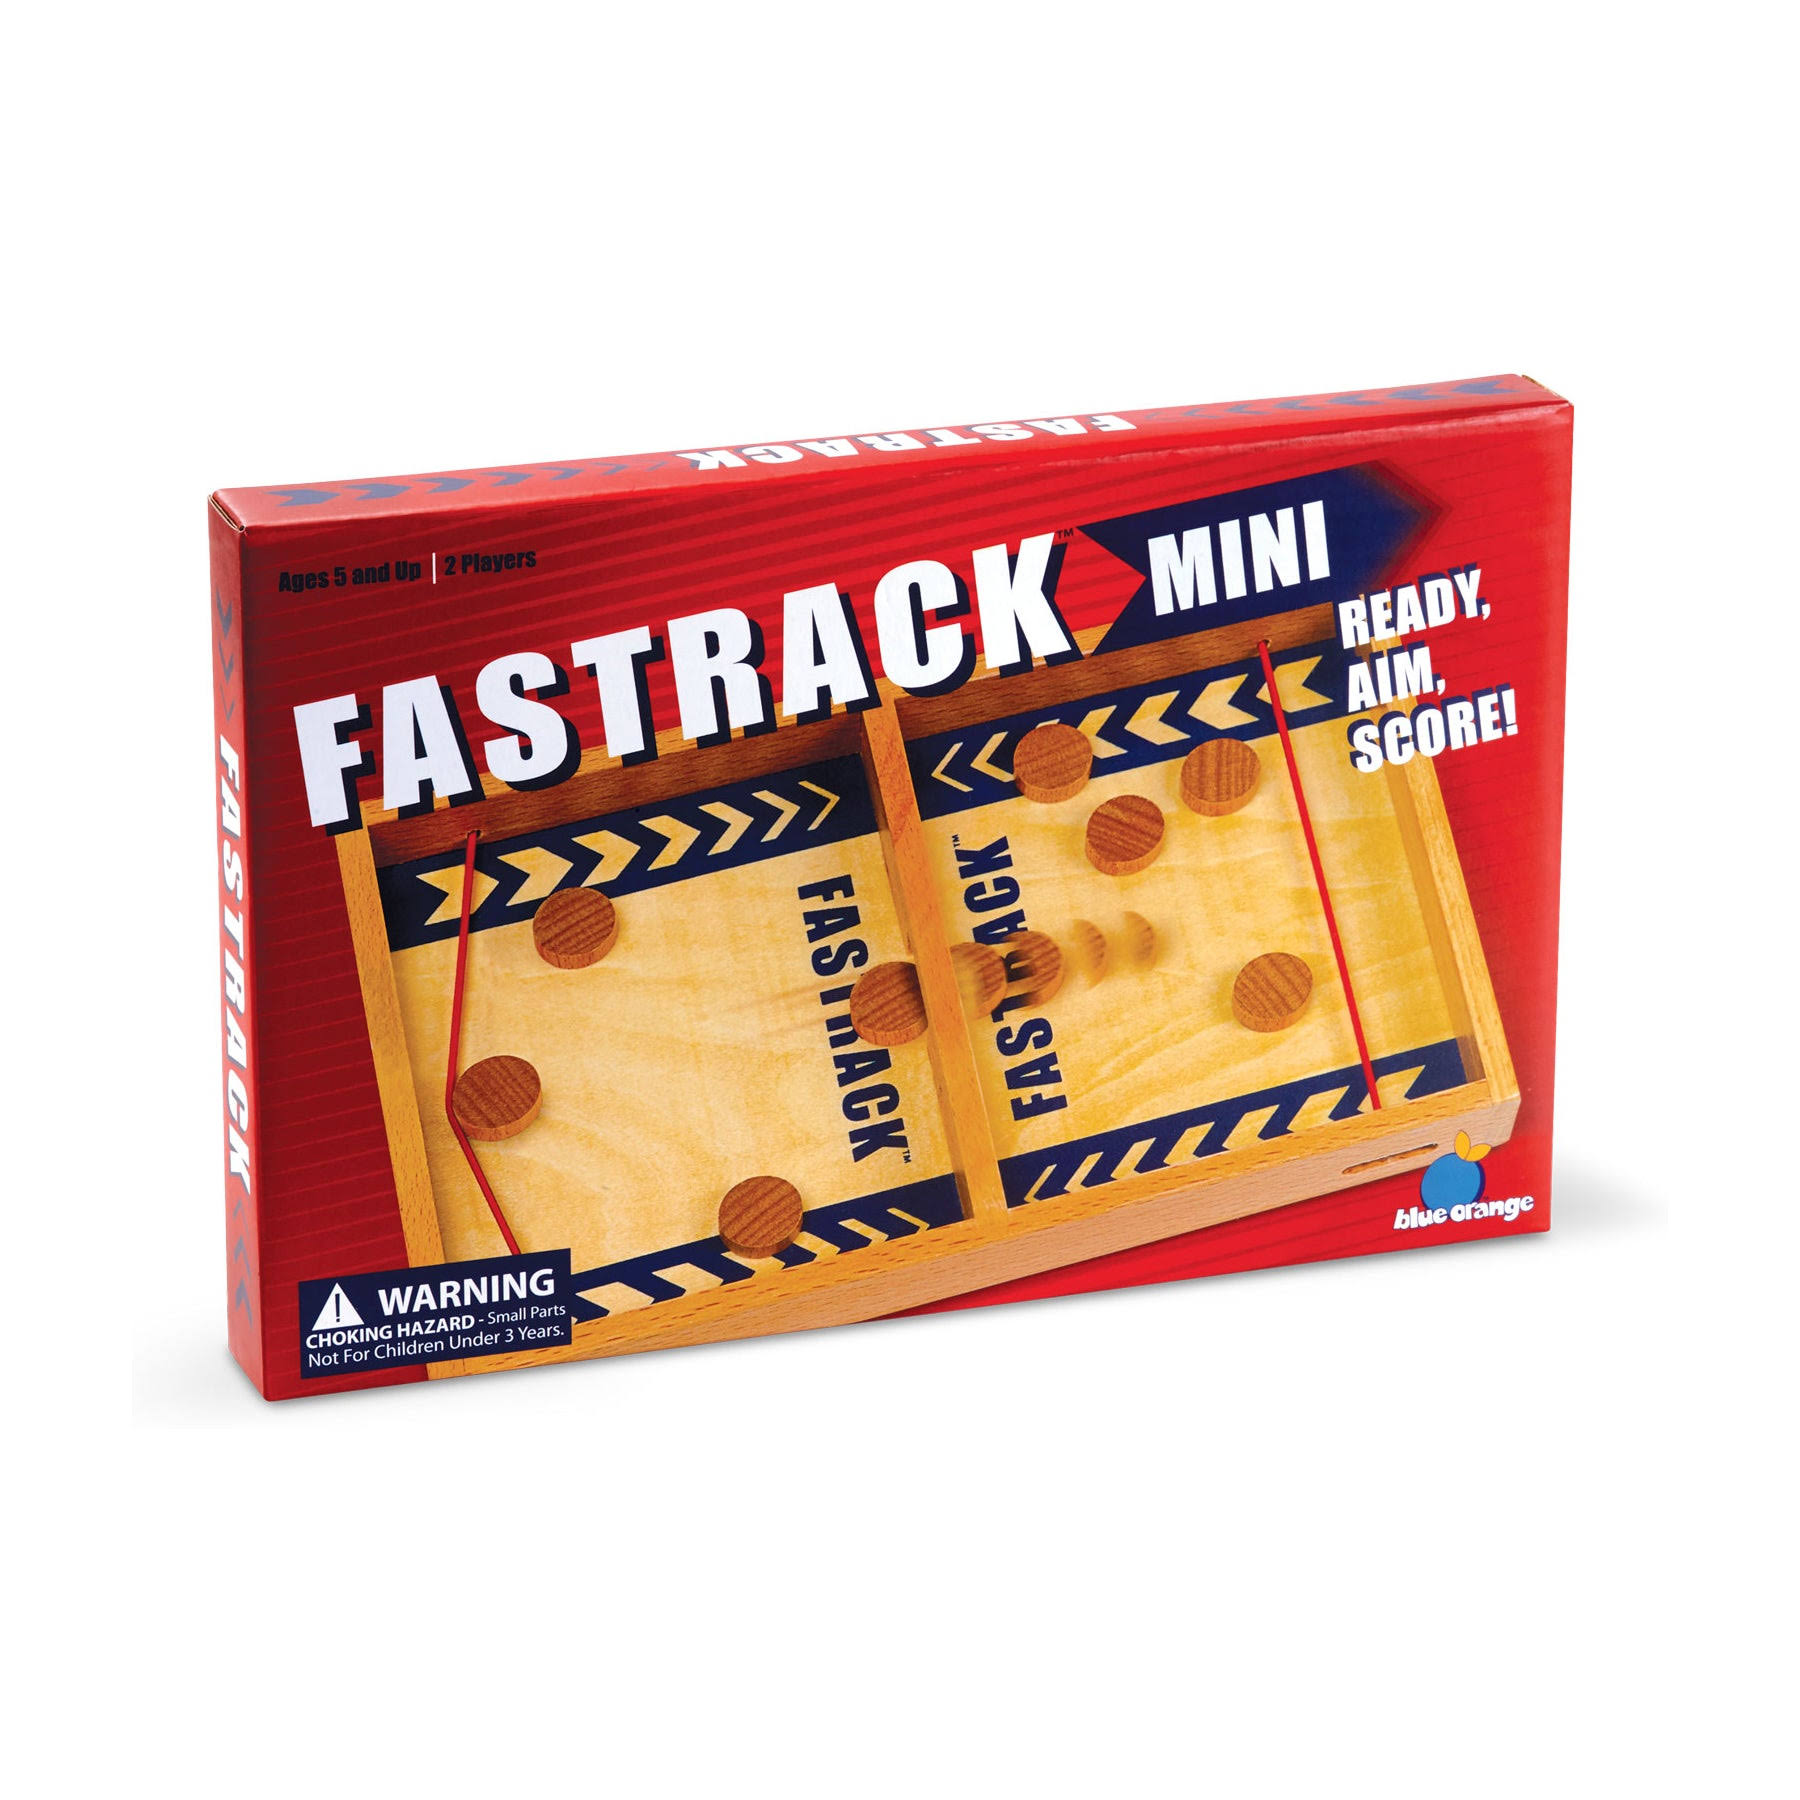 Blue Orange Fastrack Mini Ready Action Score Board Game